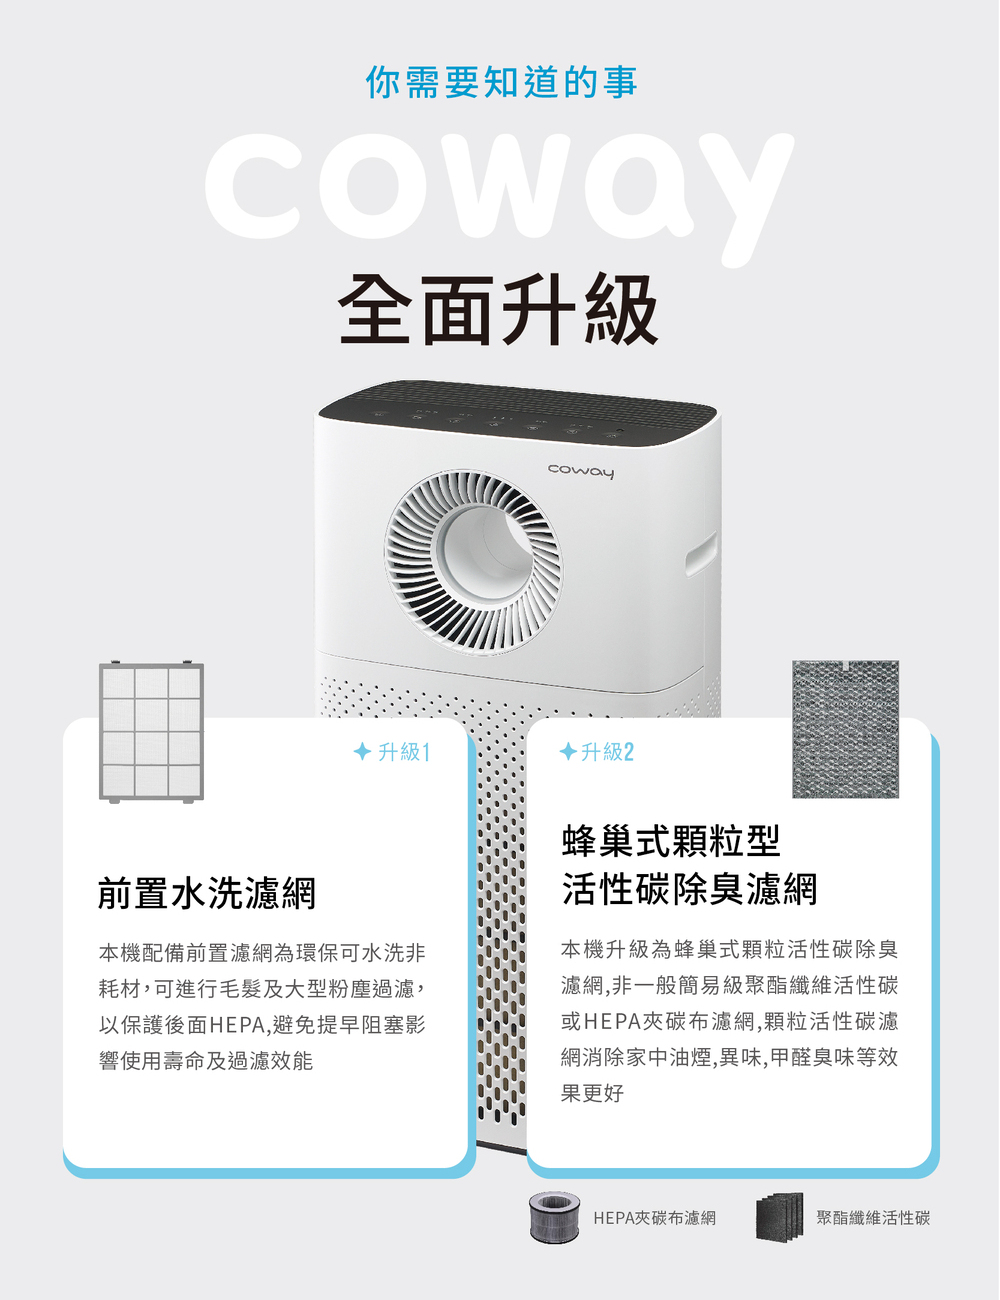 【Coway】空氣清淨機 超微塵過濾濾網 兩年份(適用AP-1516D)